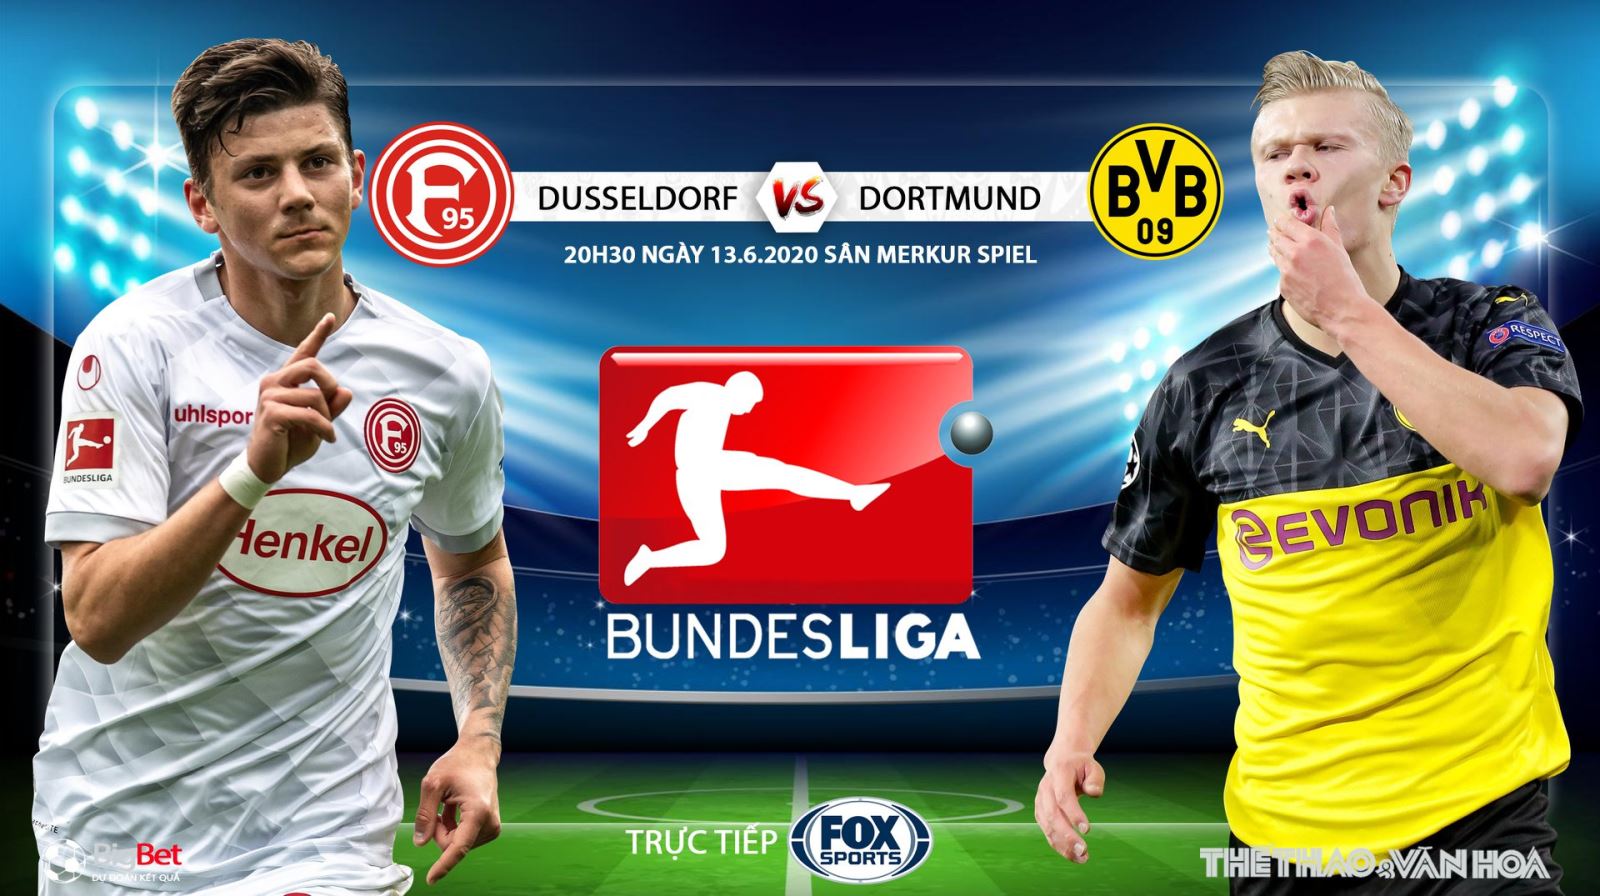 Nhận định bóng đá nhà cái Dusseldorf vs Dortmund. Trực tiếp bóng đá vòng 31 Bundesliga. FOX Sports 